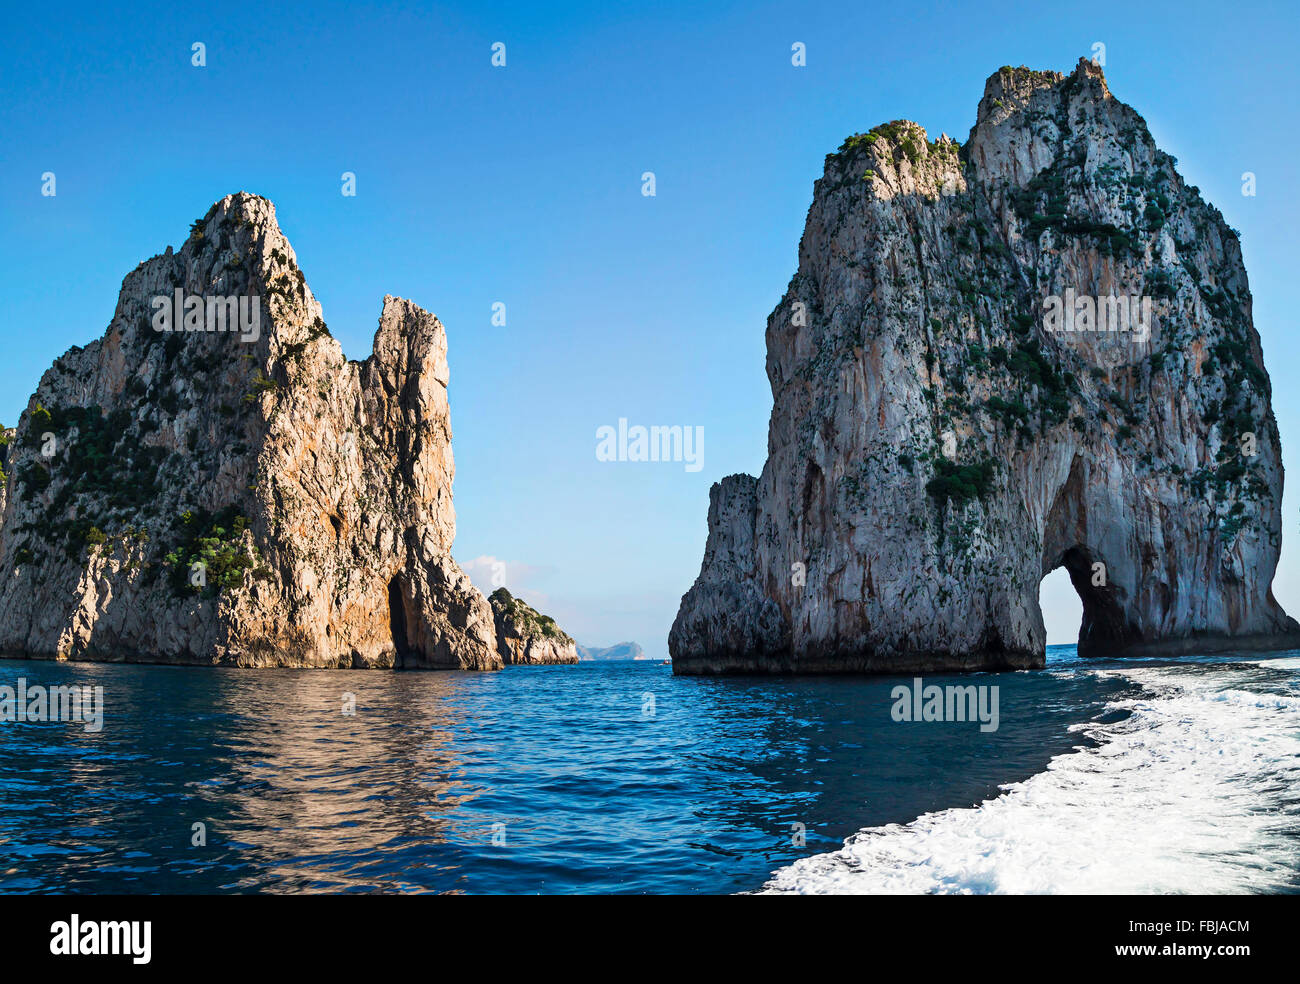 Un paysage extraordinaire à l'île de Capri avec Faraglioni - roches côtières à la formation de la mer Méditerranée. Banque D'Images